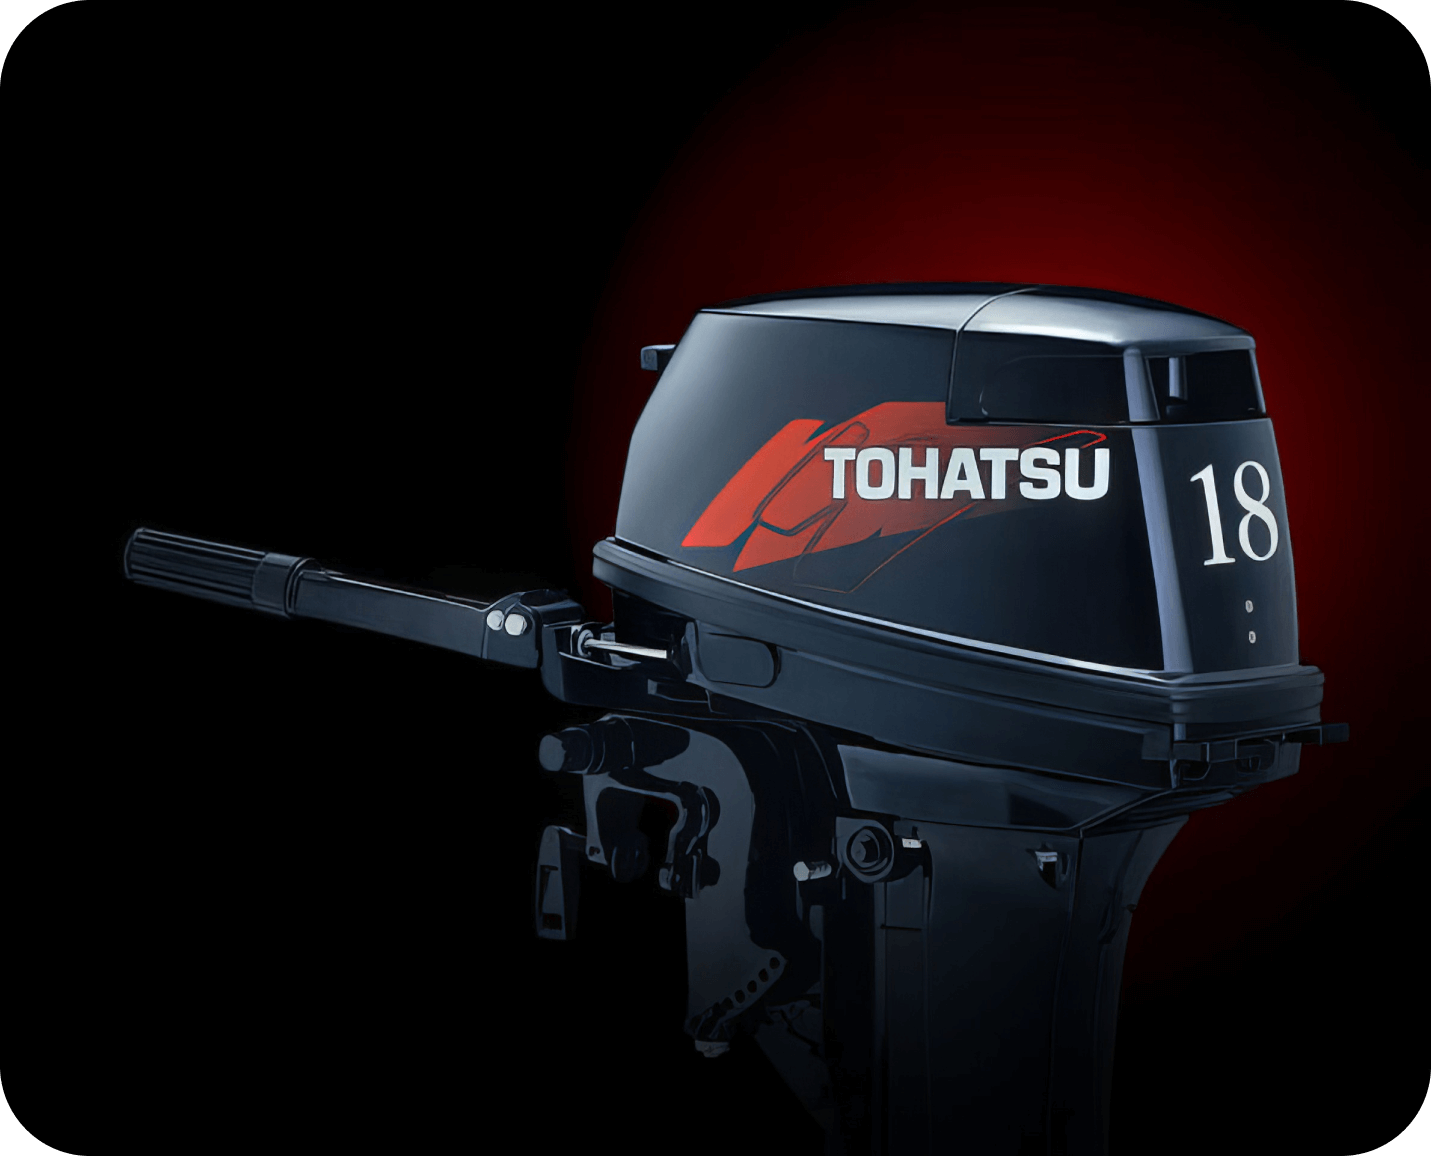 Лодочный мотор Tohatsu 18. Лодочный мотор Tohatsu m 18e2 s. Tohatsu m 18 e2 s. Tohatsu 9.9 и 18. Тохатсу 18 купить 2 х